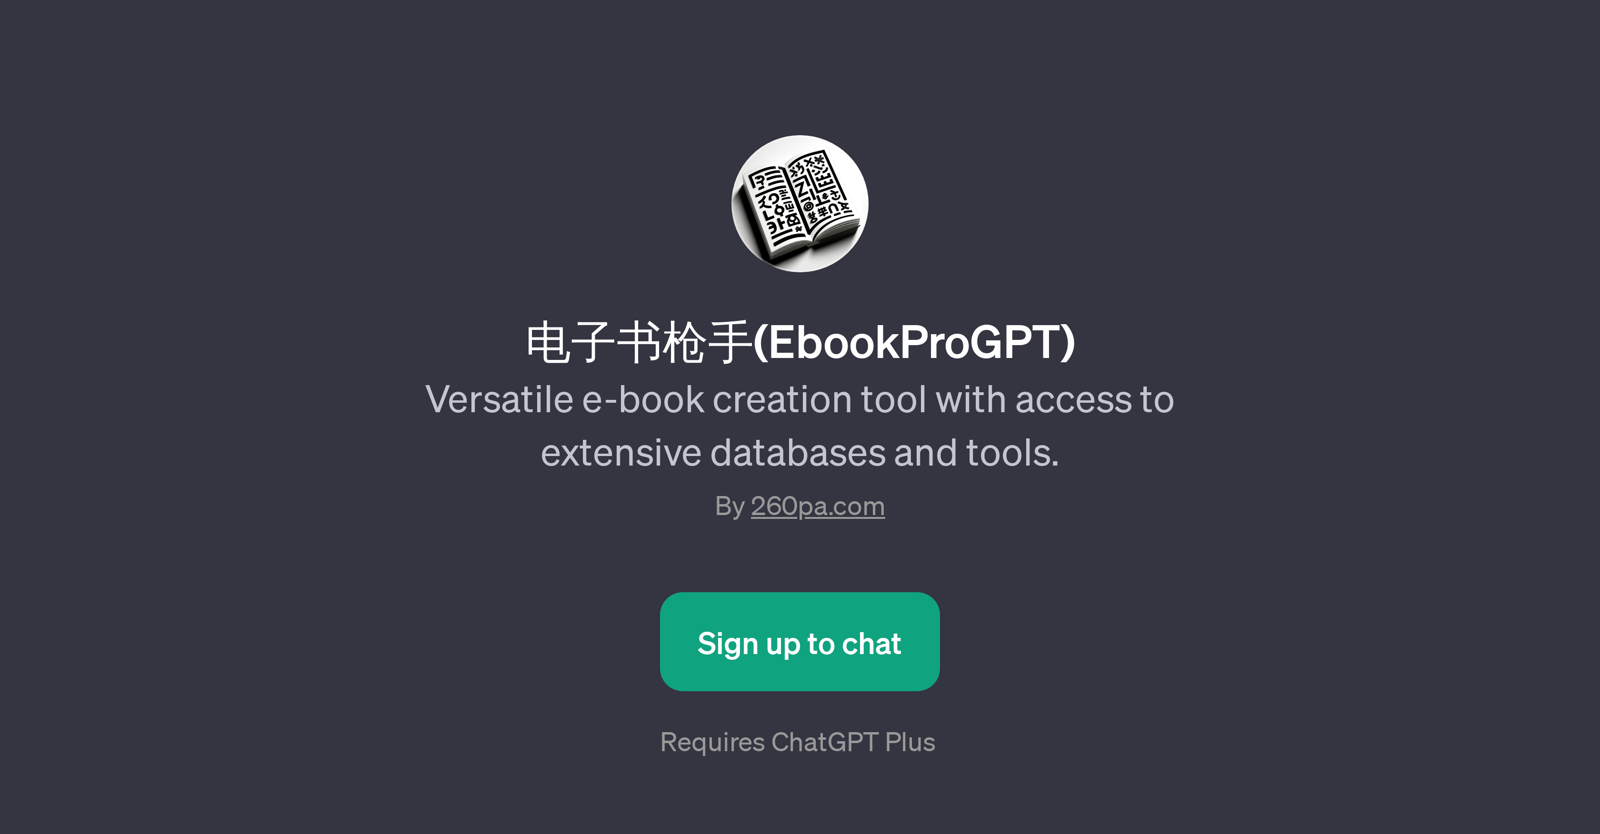 (EbookProGPT) website